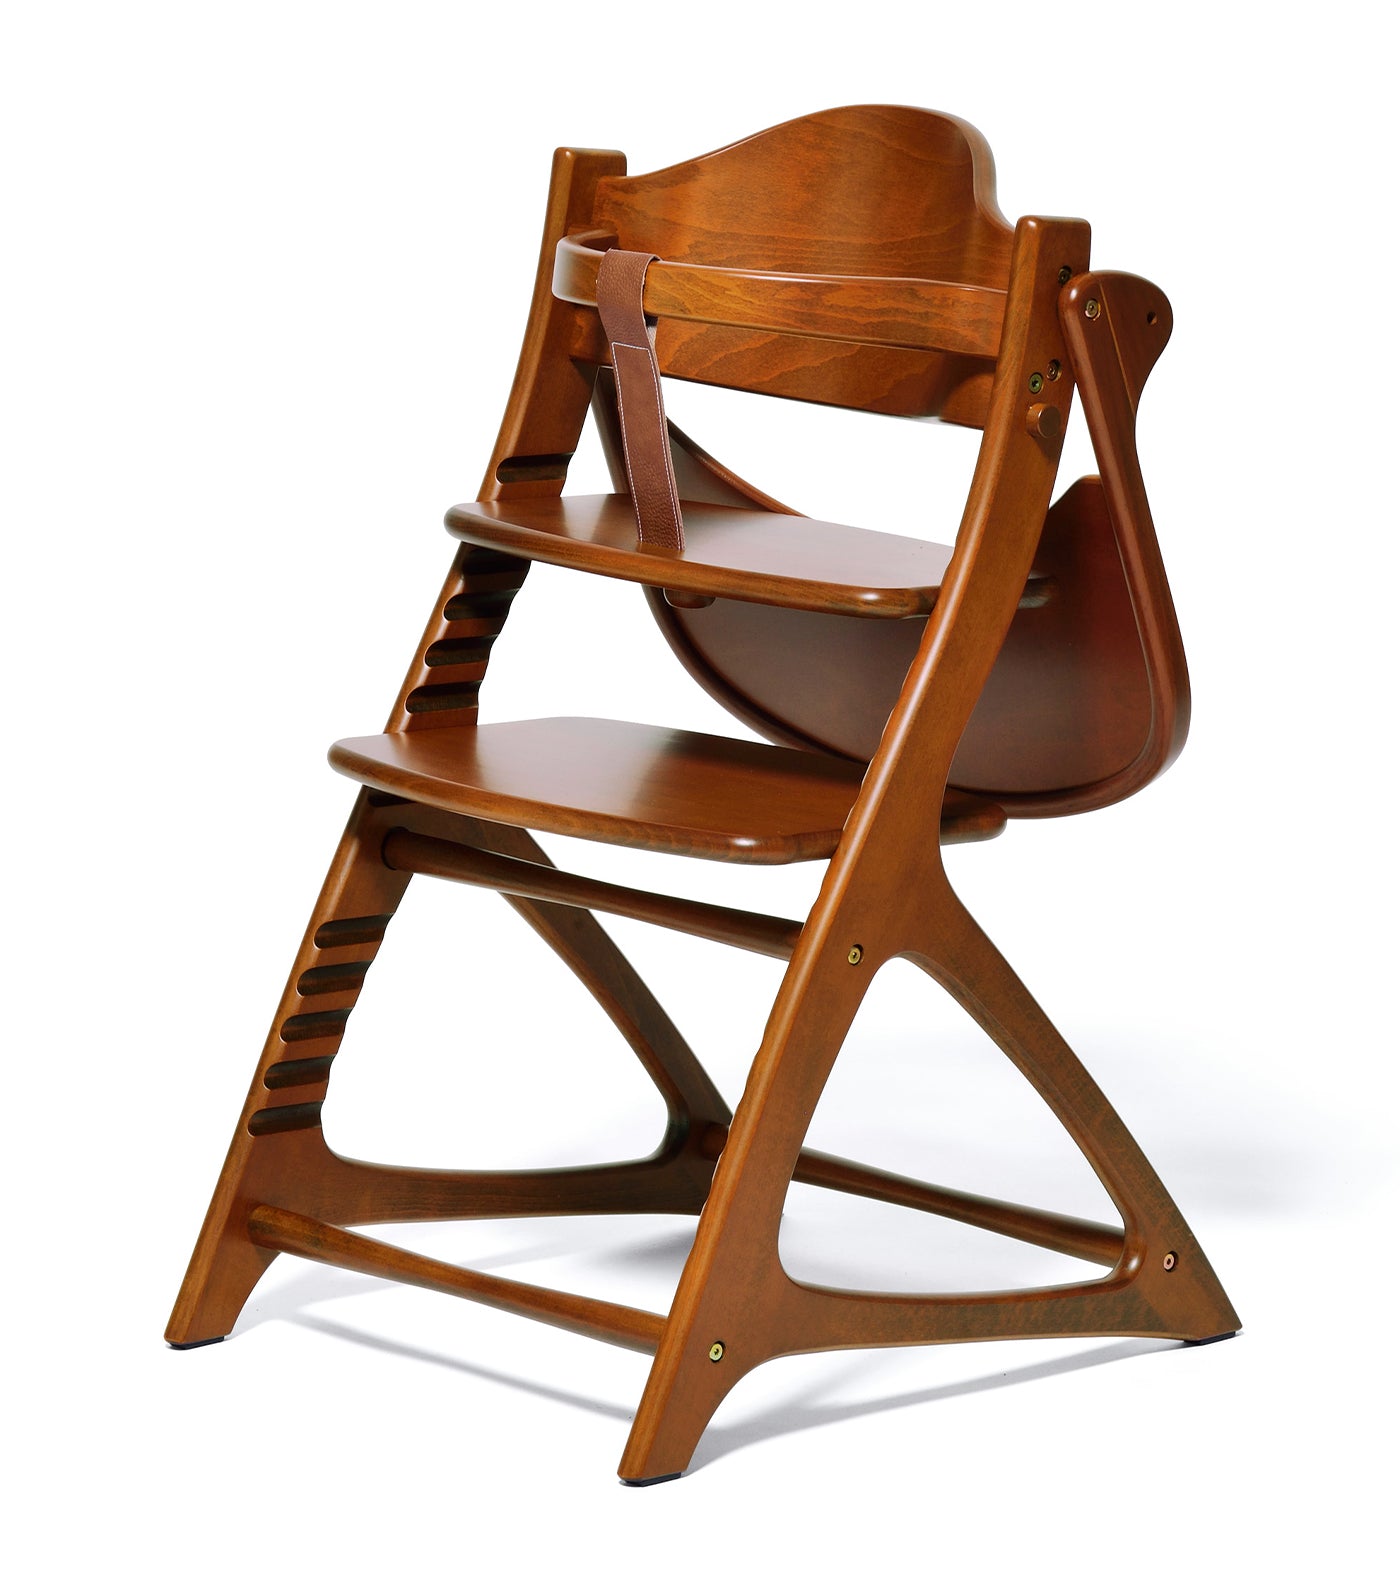 Materna Wooden High Chair - Light Brown